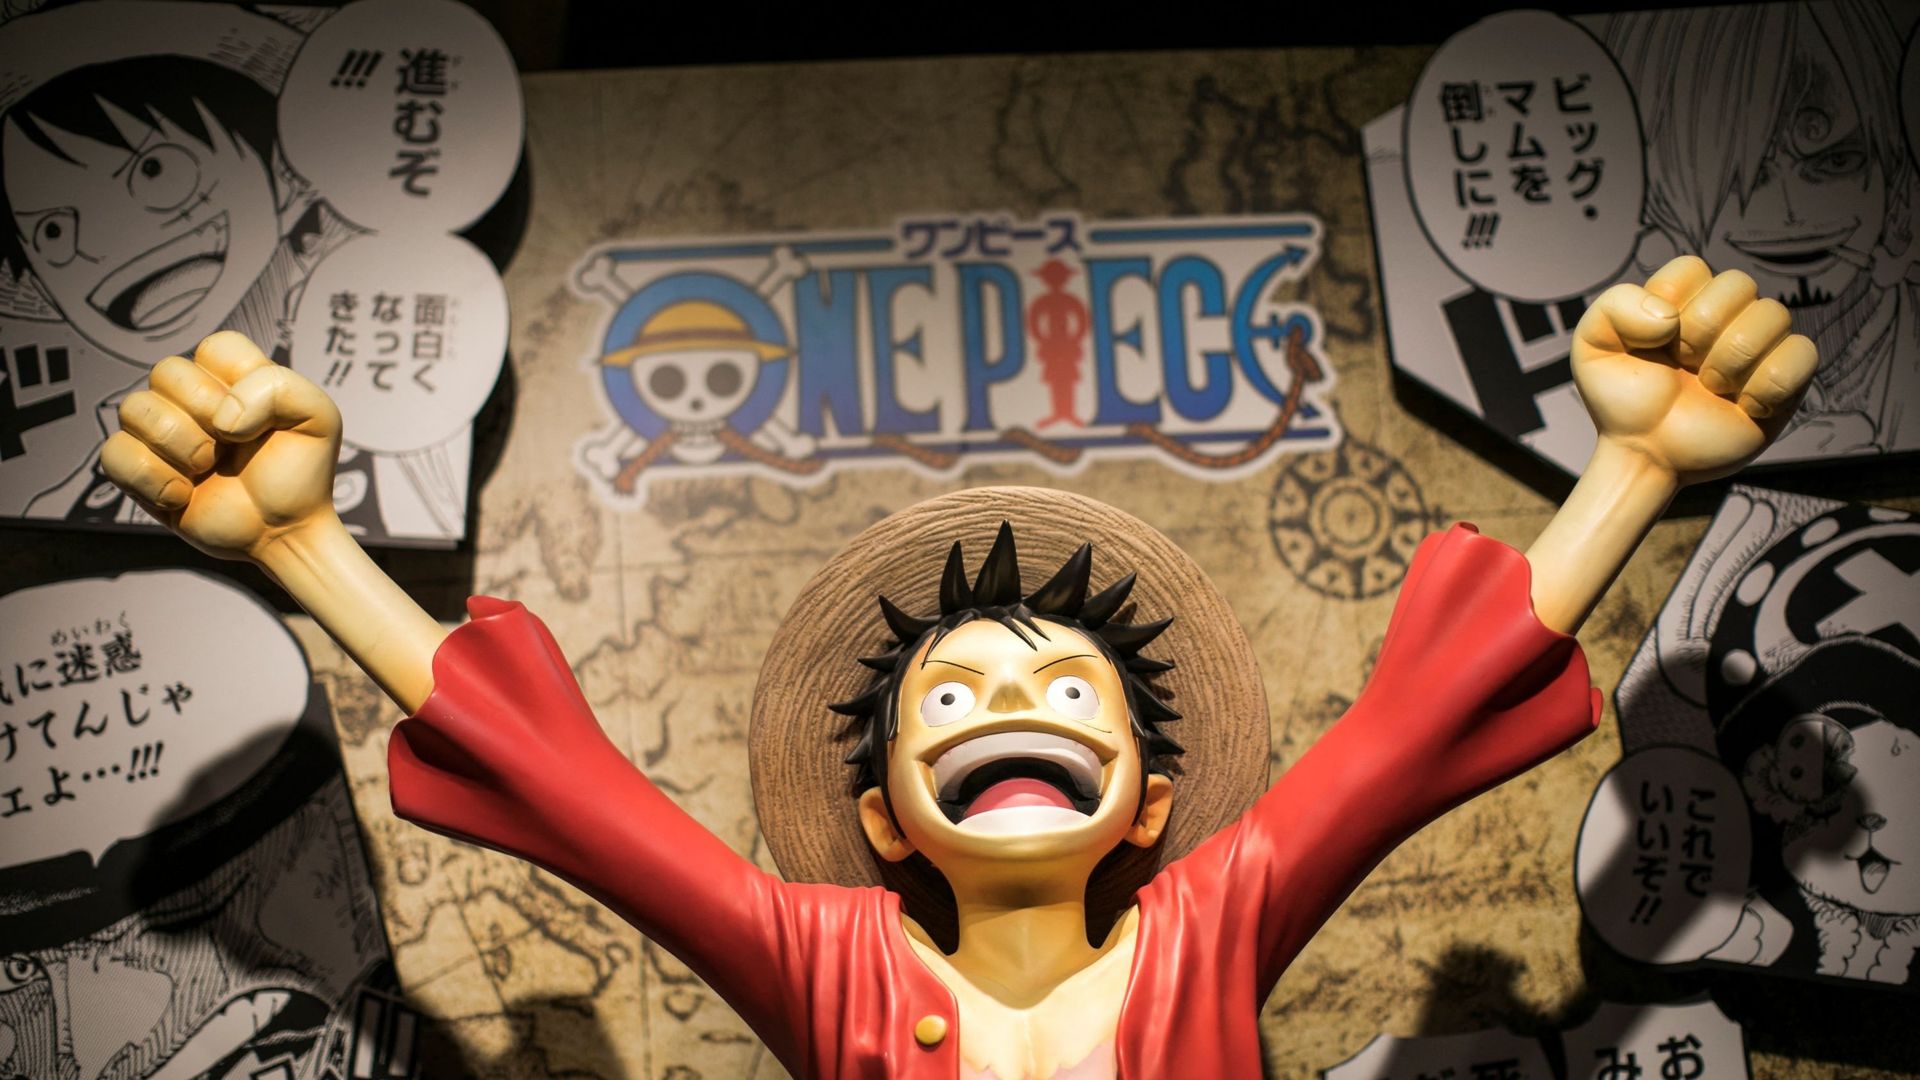 Le personnage Monkey D. Luffy exposé dans un magasin lors d’une conférence de presse à Tokyo le 19 novembre 2019.